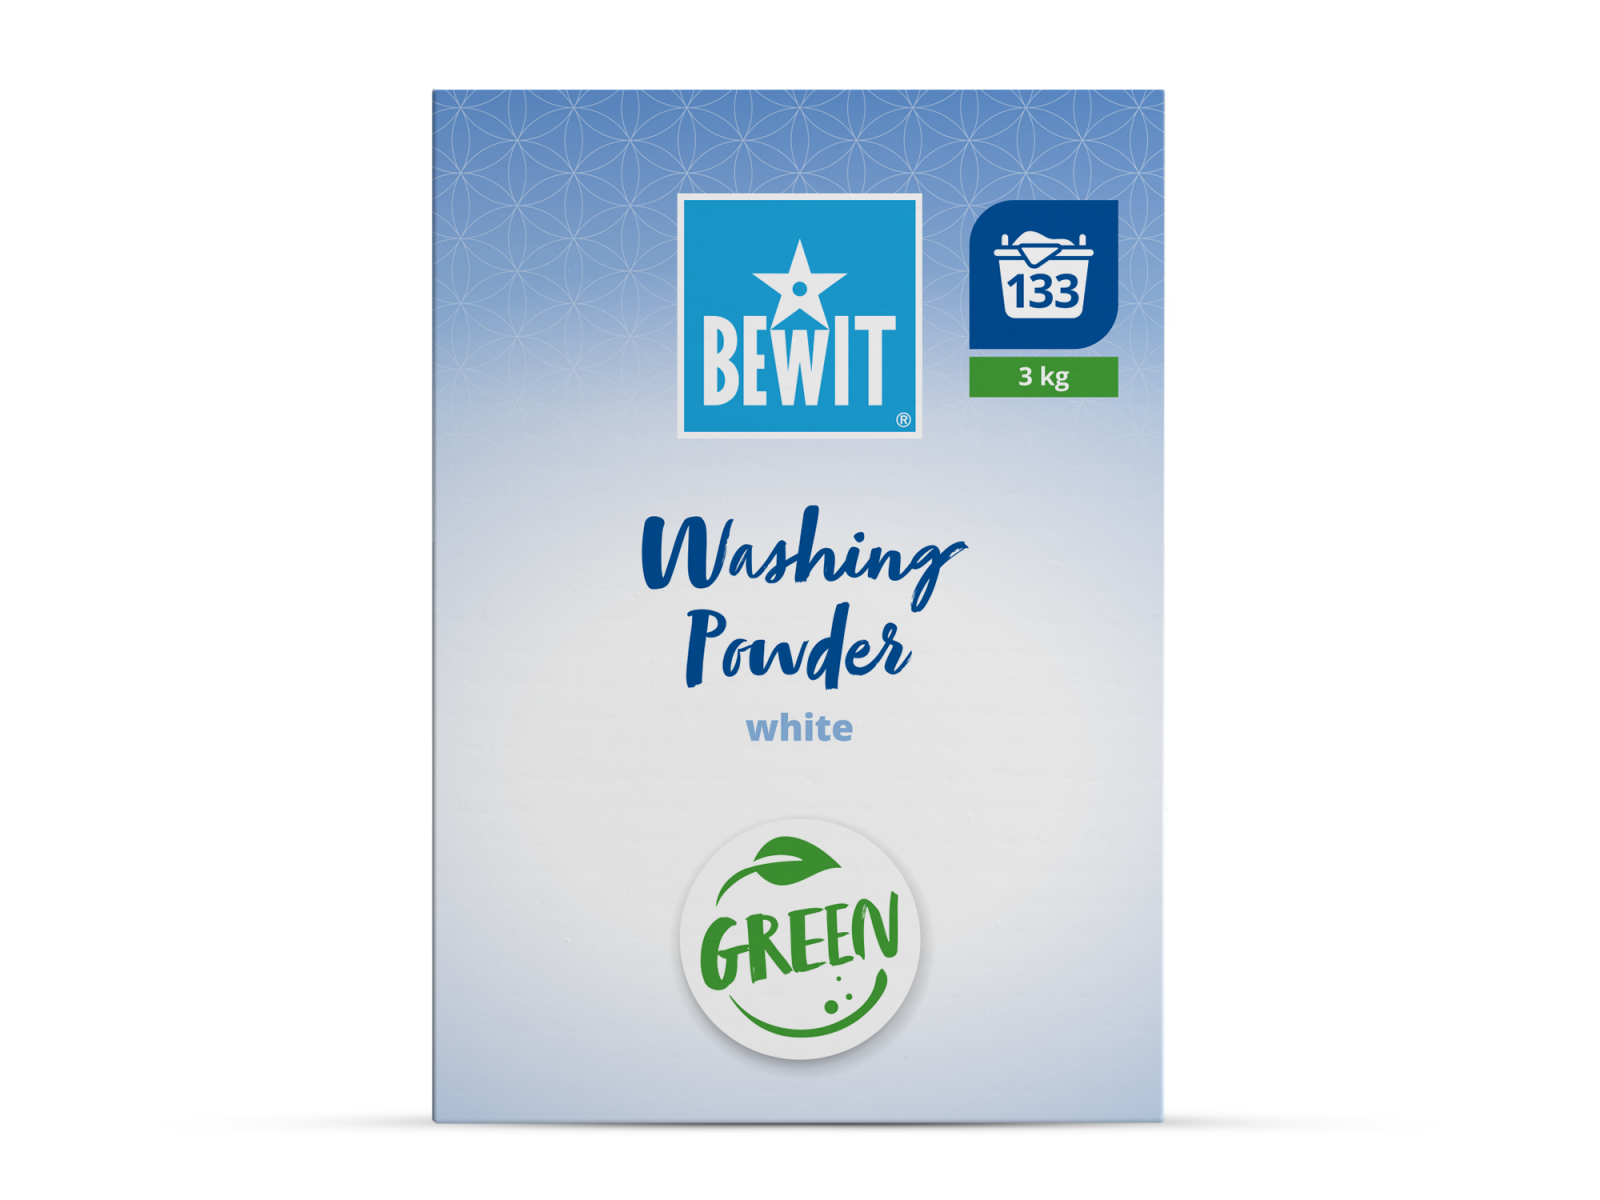 BEWIT Washing Powder White - Laundry detergents - 2